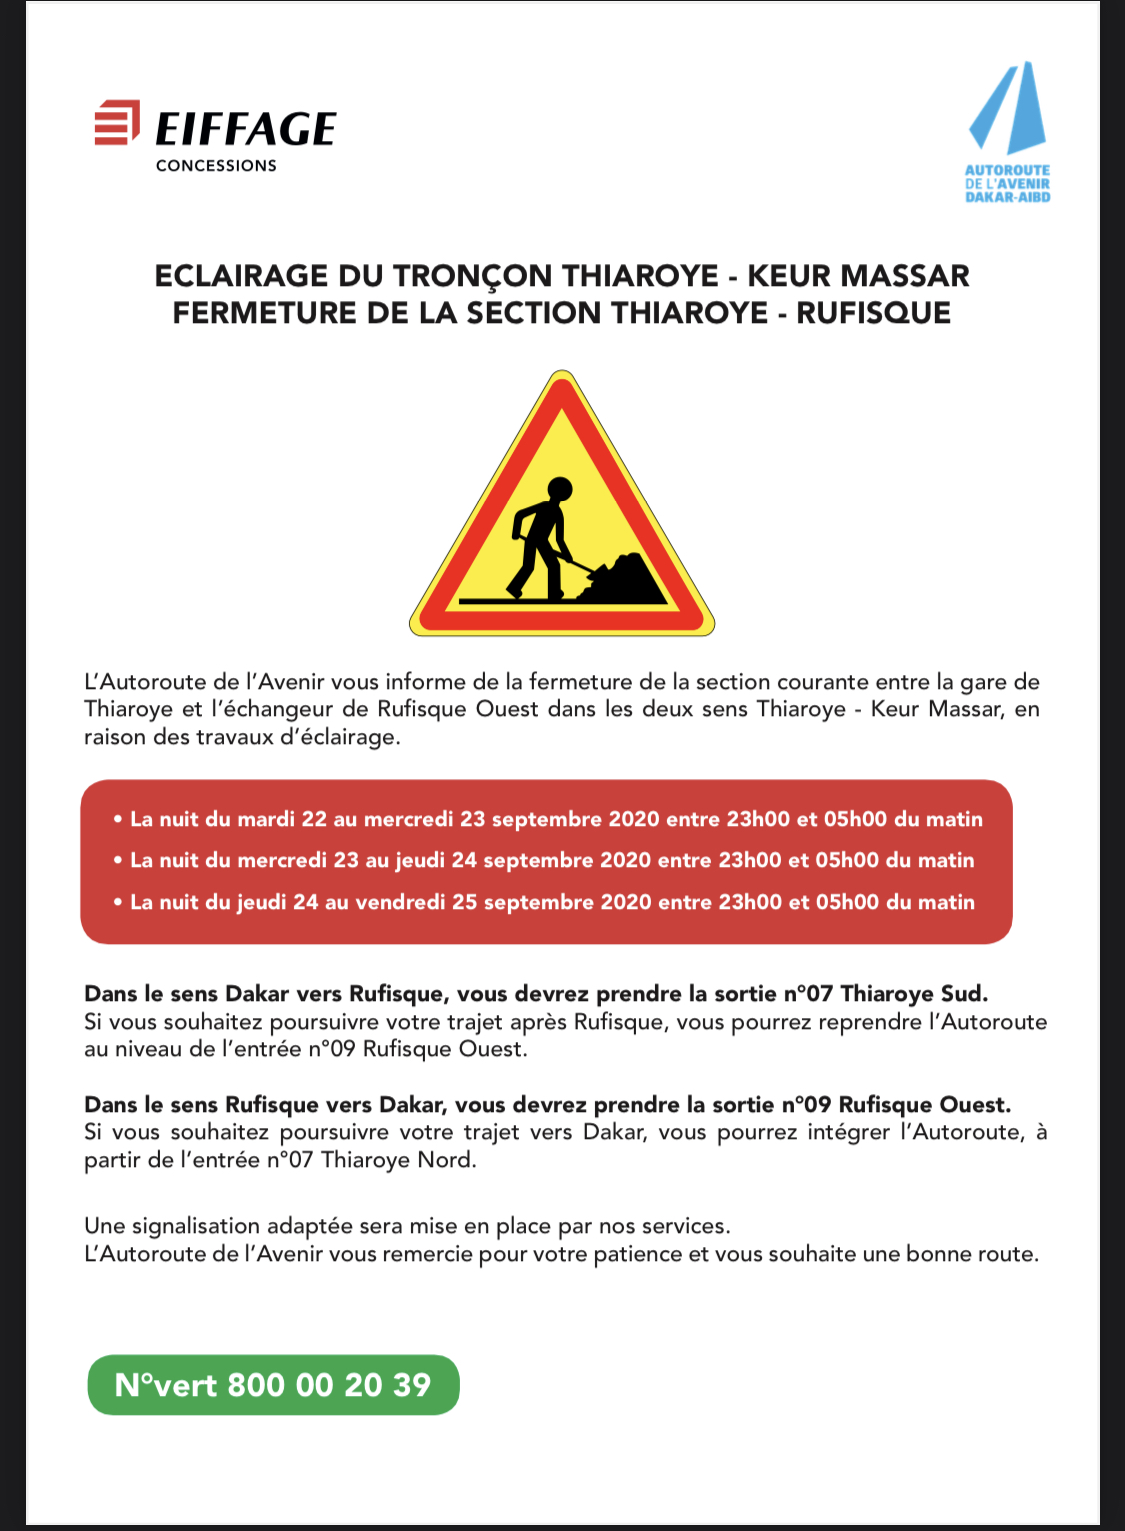 Travaux d’éclairage tronçon Thiaroye-Keur Massar: Jours et heures de fermetures de la section Thiaroye-Rufisque (Autoroute de l’Avenir)